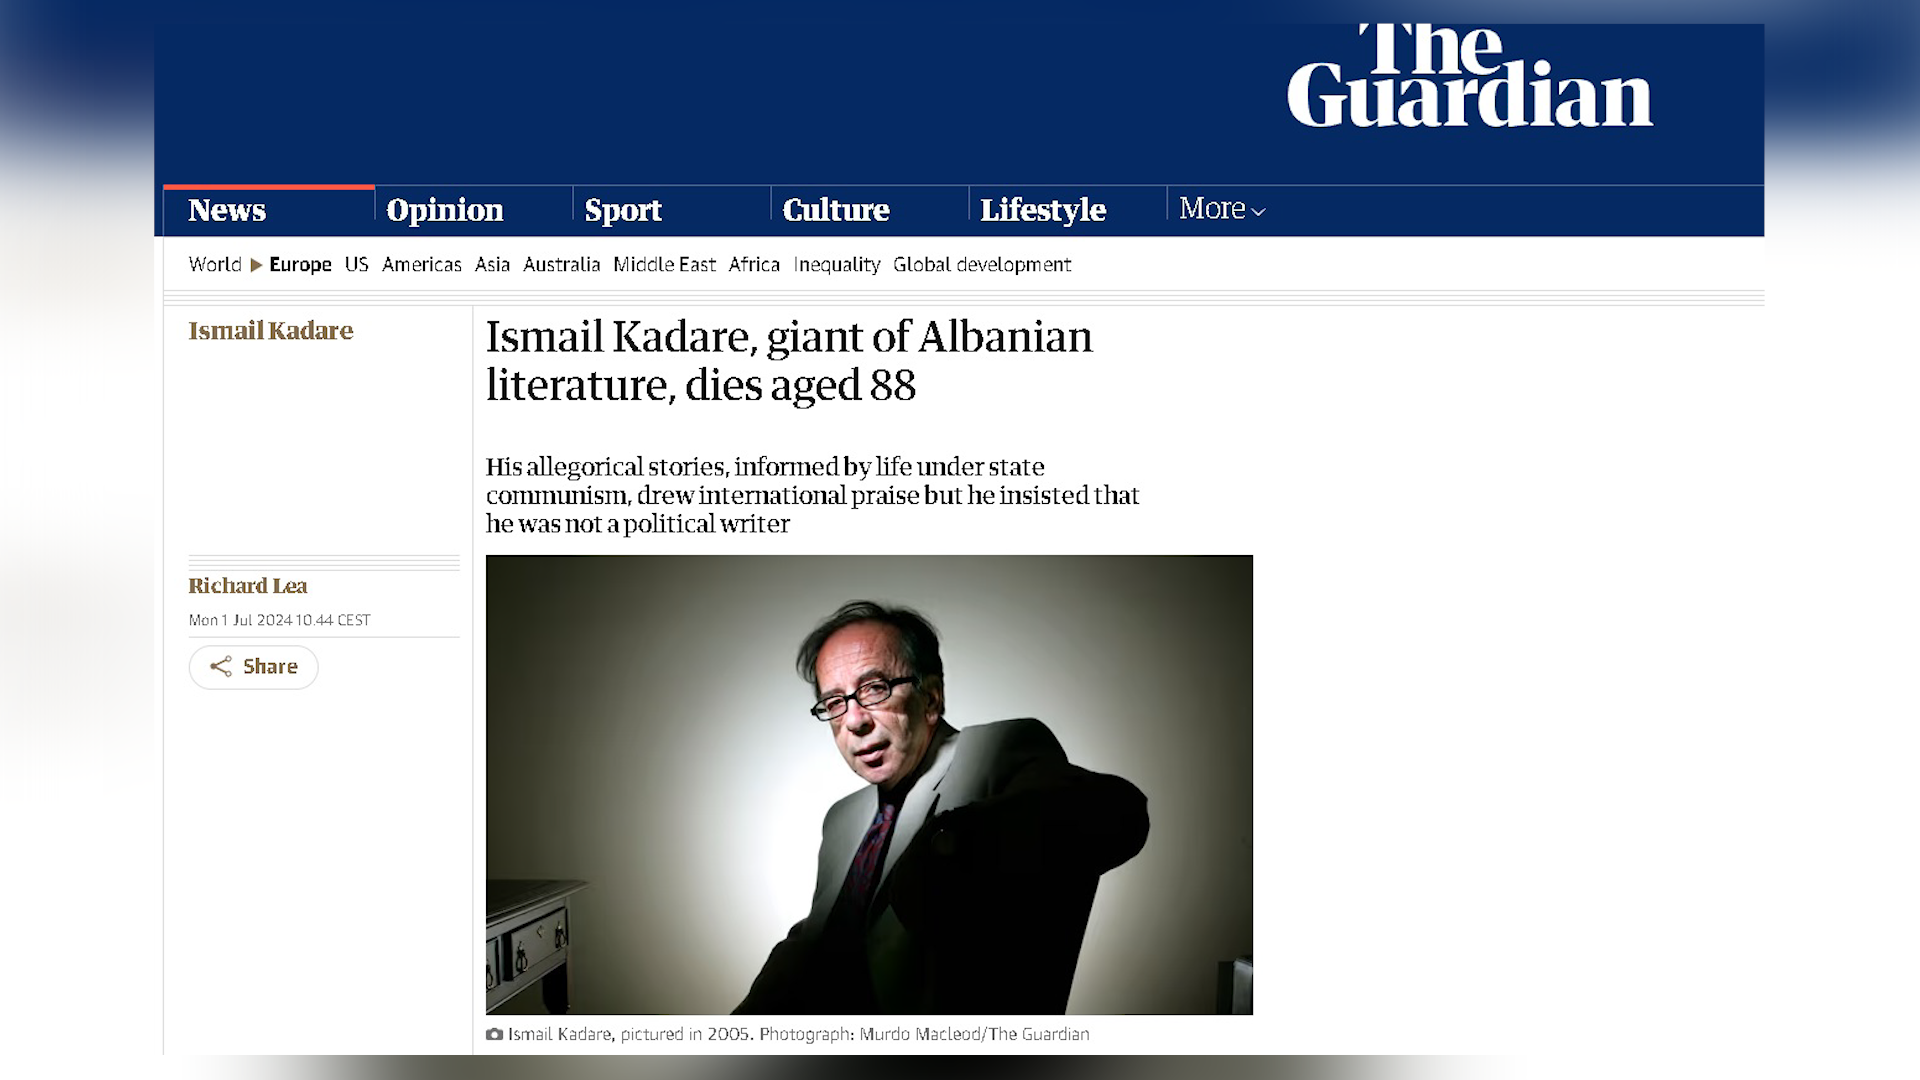 The Guardian: Ismail Kadare, gjiganti i letërsisë shqiptare vdes në moshën 88-vjeçare!